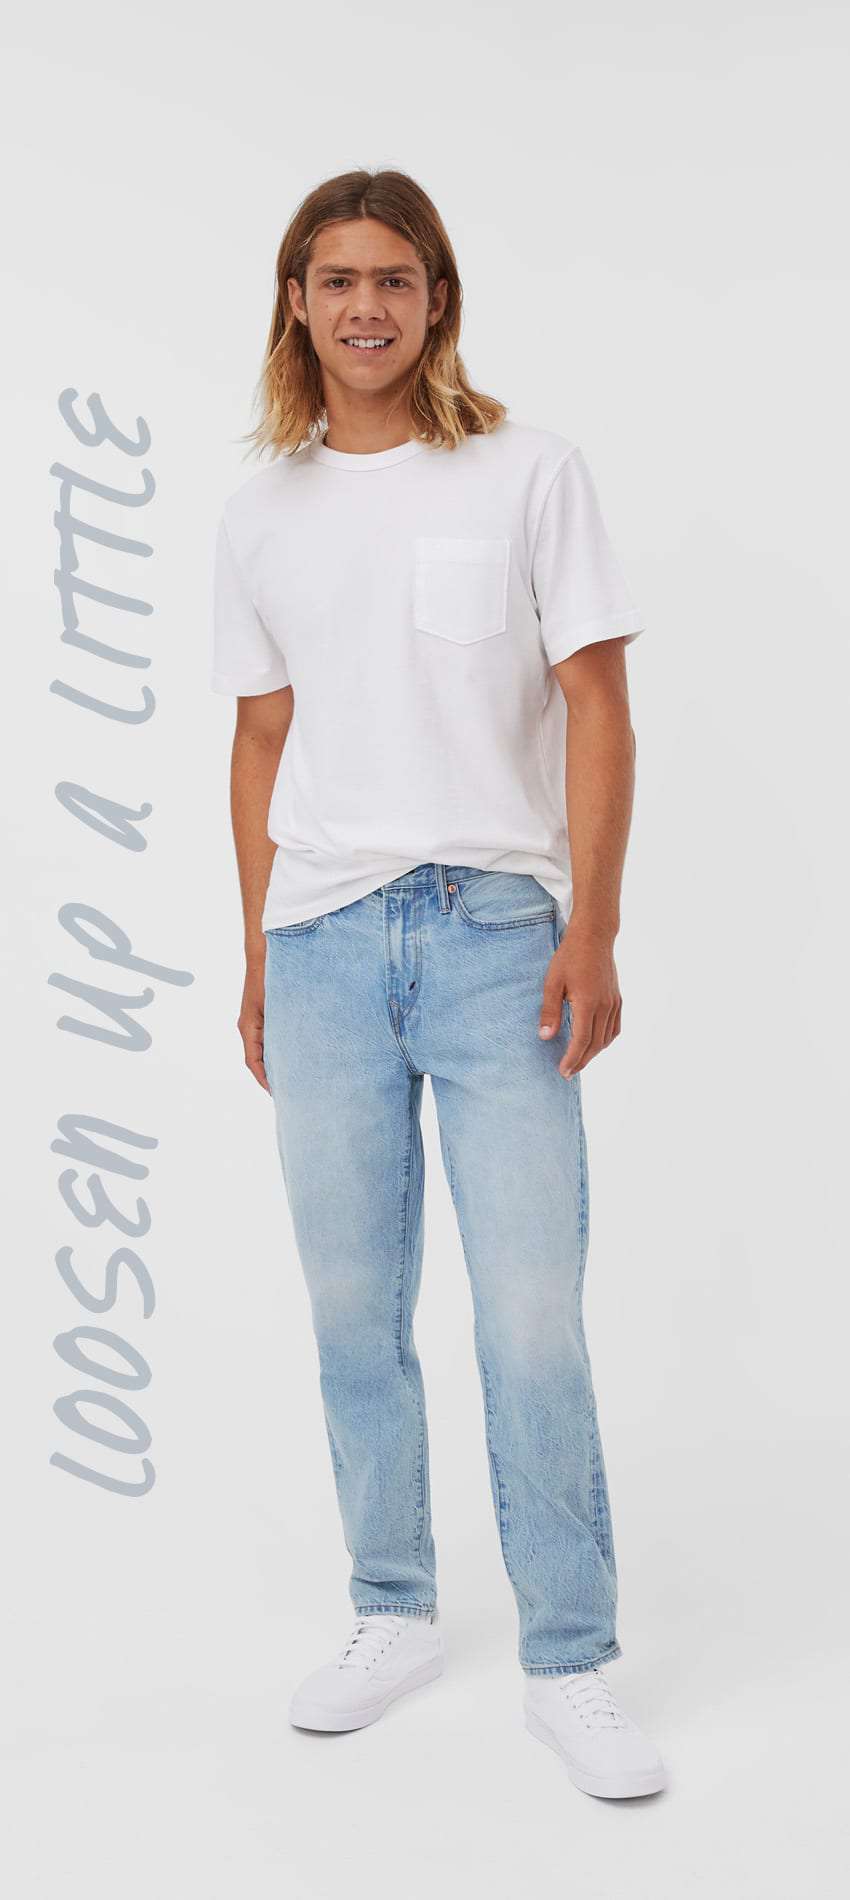 Formen vente ventilator Men's Jeans: Skinny, Slim, Athletic & More | American Eagle